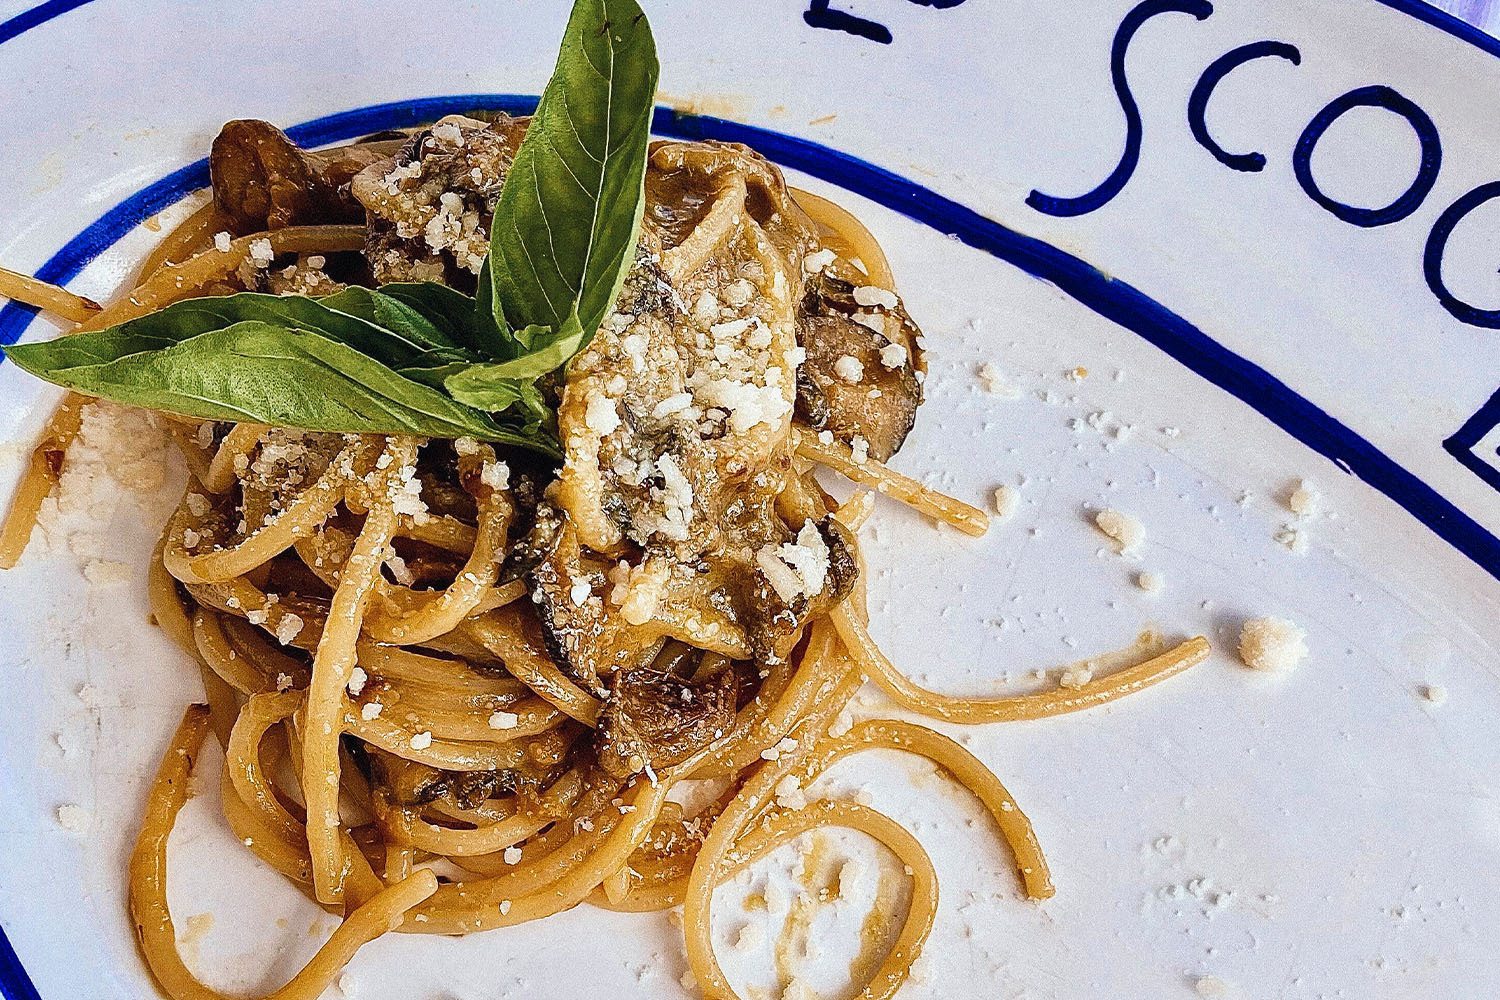 A plate of Lo Scoglio's famous spaghetti alle zucchine.